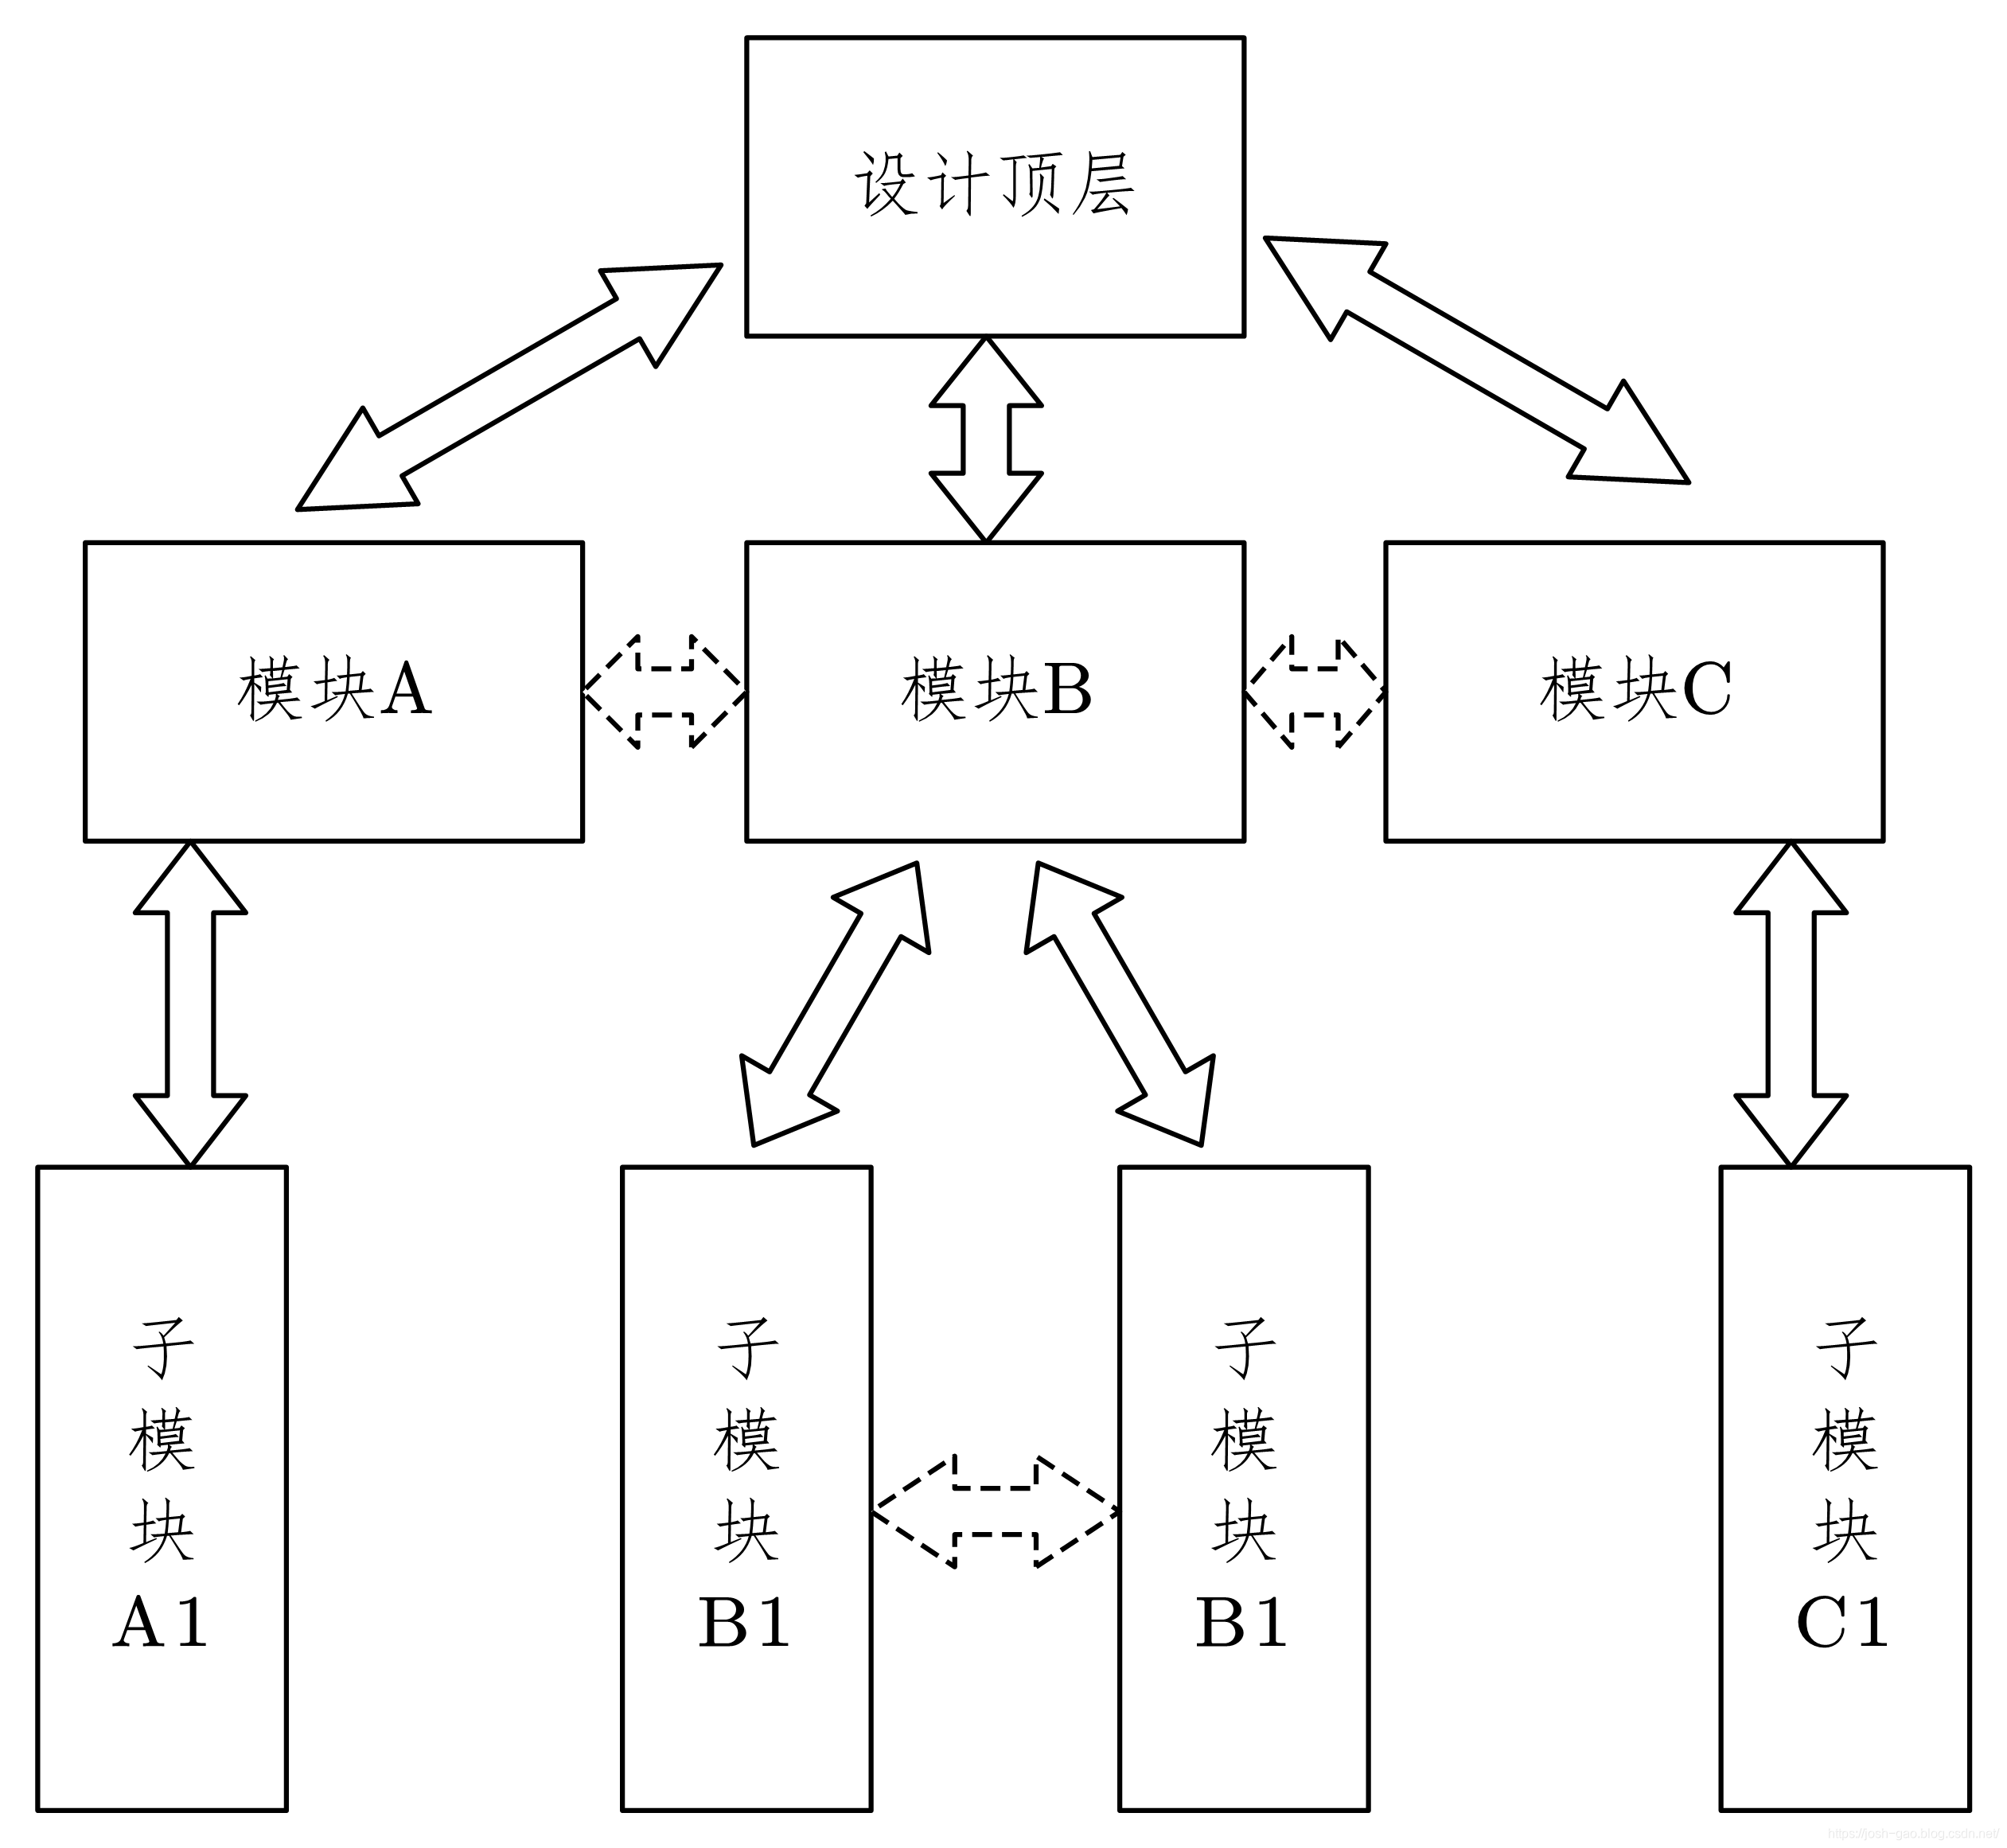 5-11-结构层次化编码示意图